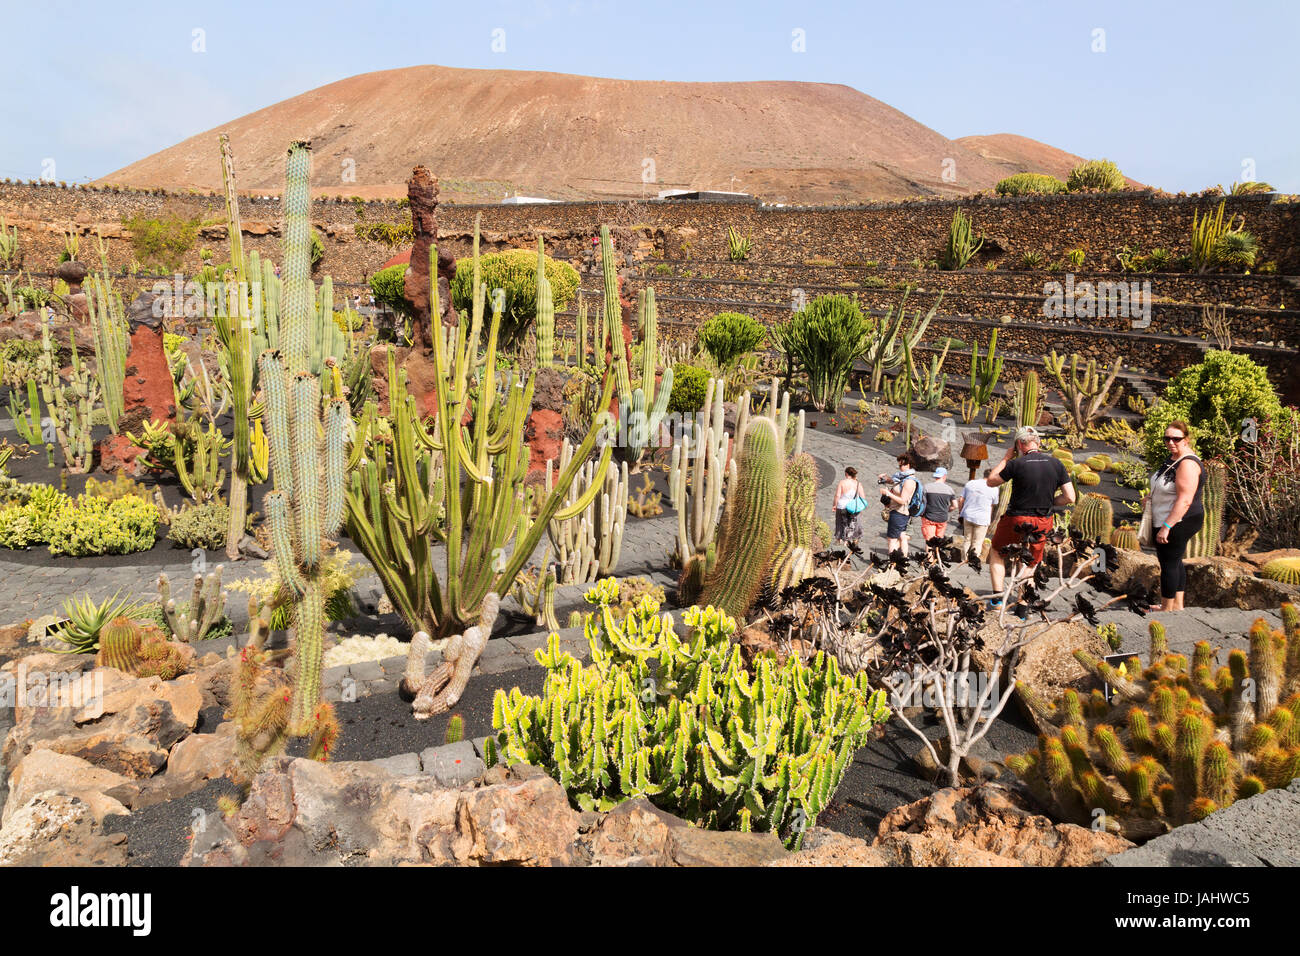 Lanzarote Jardín de Cactus o el Jardín de Cactus, diseñado por el artista local César Manrique, Lanzarote, Islas Canarias, Europa Foto de stock